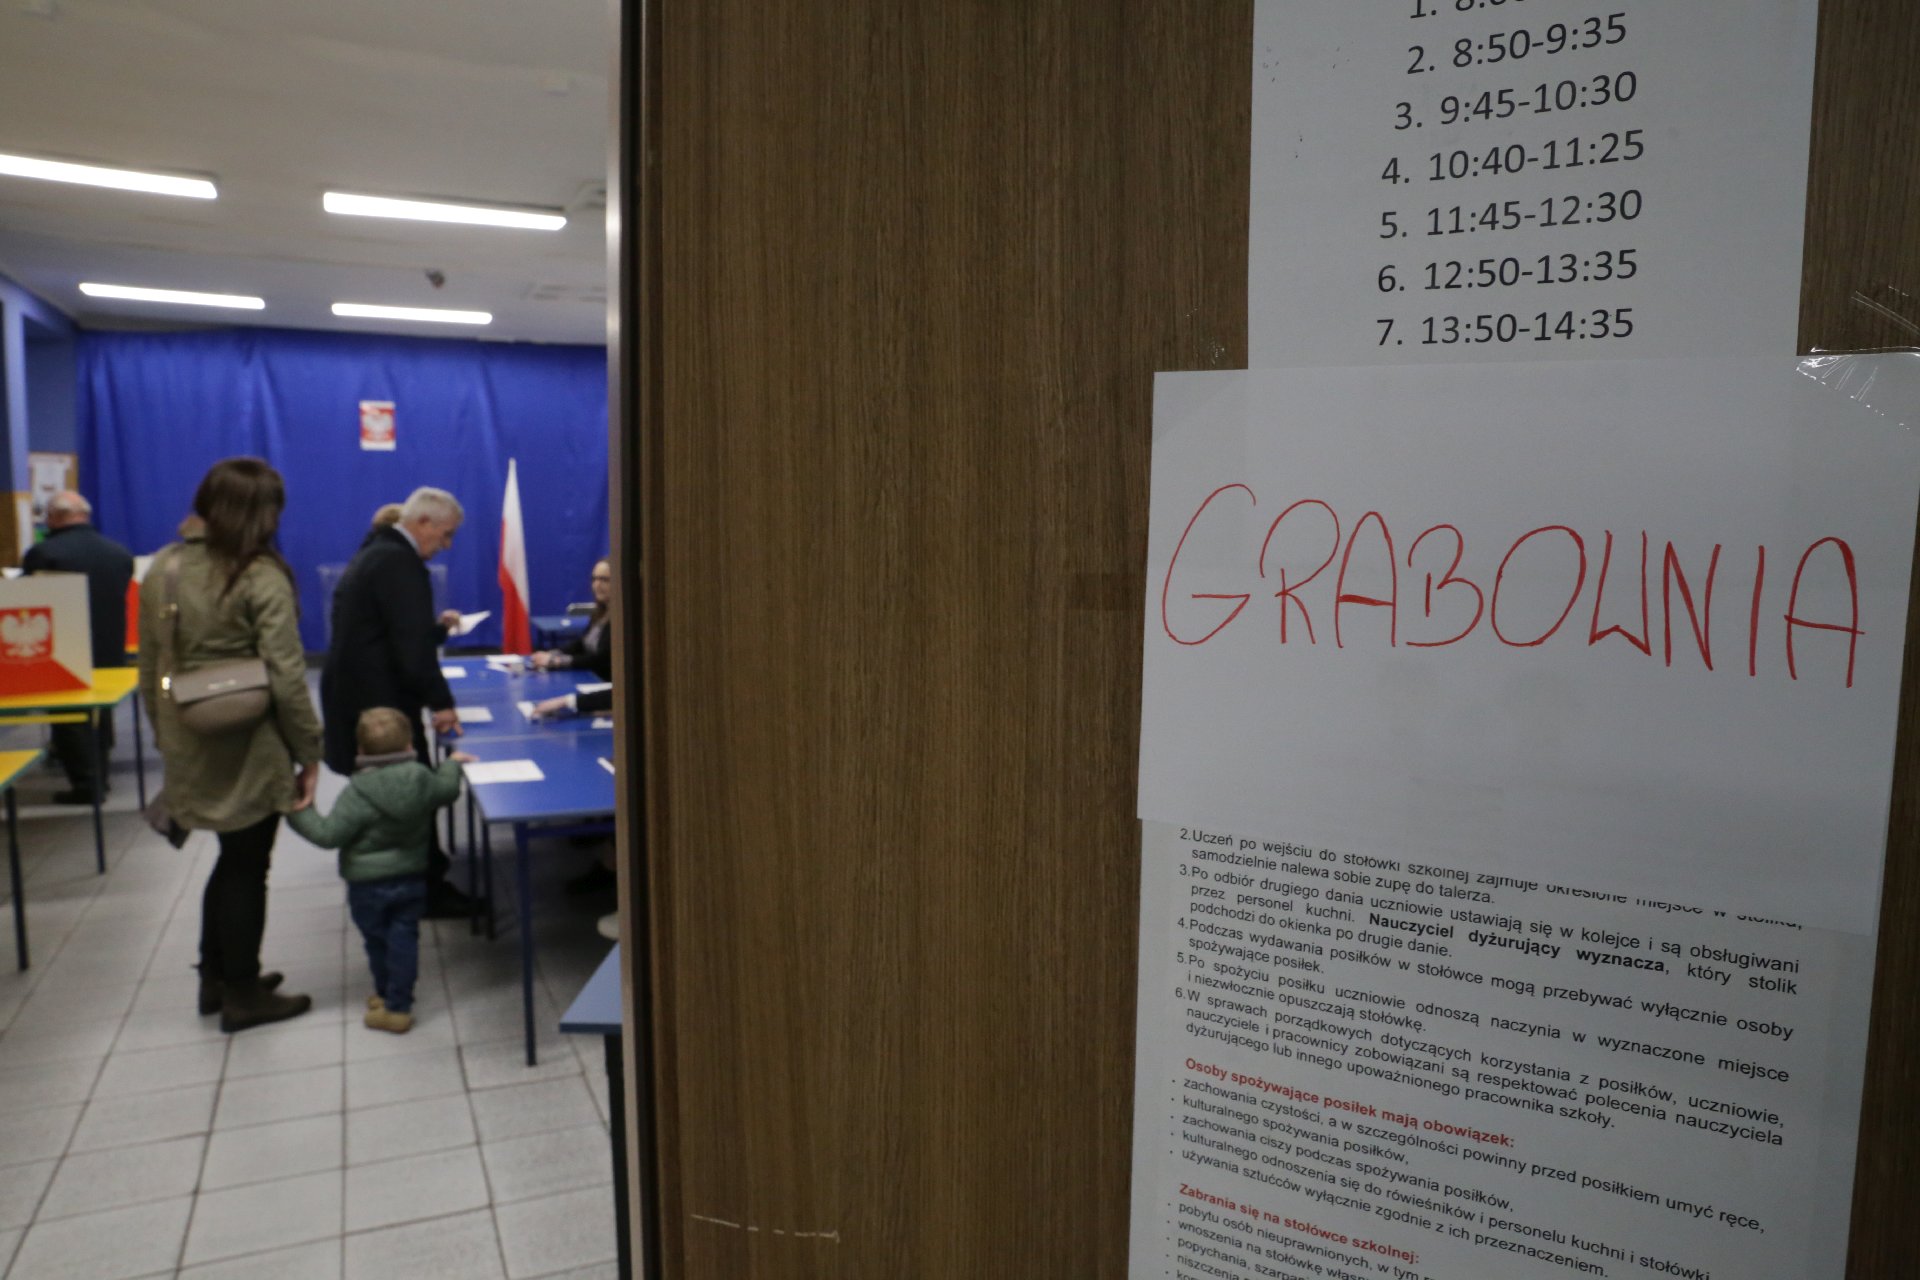 Mieszkańcy Grabowni jako jedyni w Rybniku nie mogą głosować w swojej dzielnicy. Zdj. Wacław Troszka